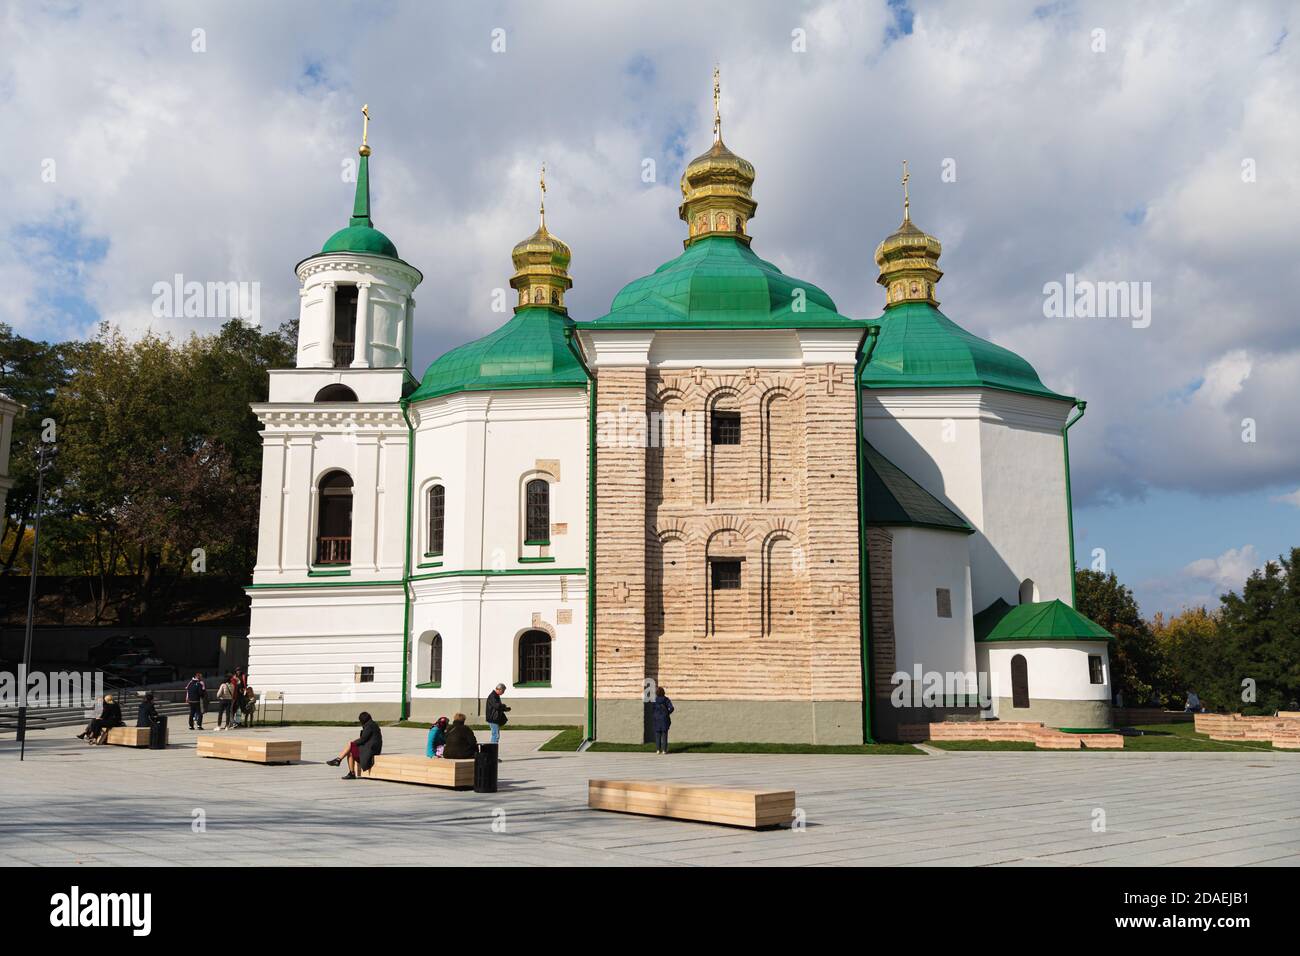 KIEV, UCRAINA - 29 settembre 2019: Chiese e cupole d'oro a Kiev, Ucraina. Cattedrale cristiana ortodossa con cupole dorate e croci. Chiesa del S. Foto Stock